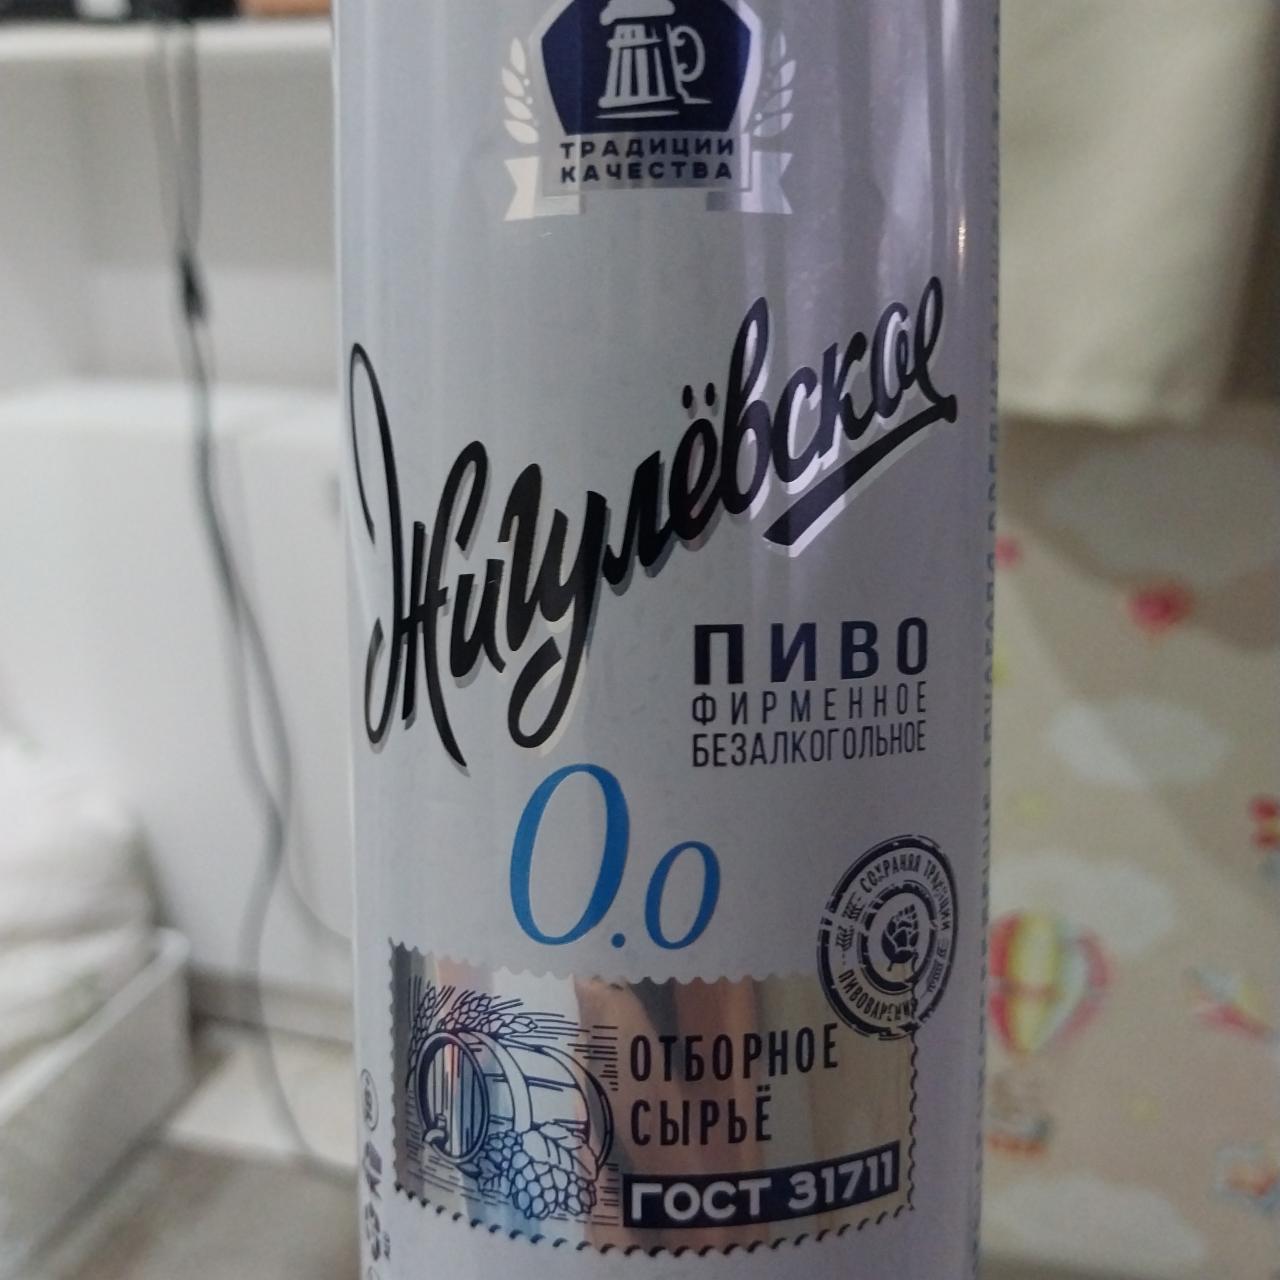 Фото - Пиво фирменное безалкогольное Жигулёвское